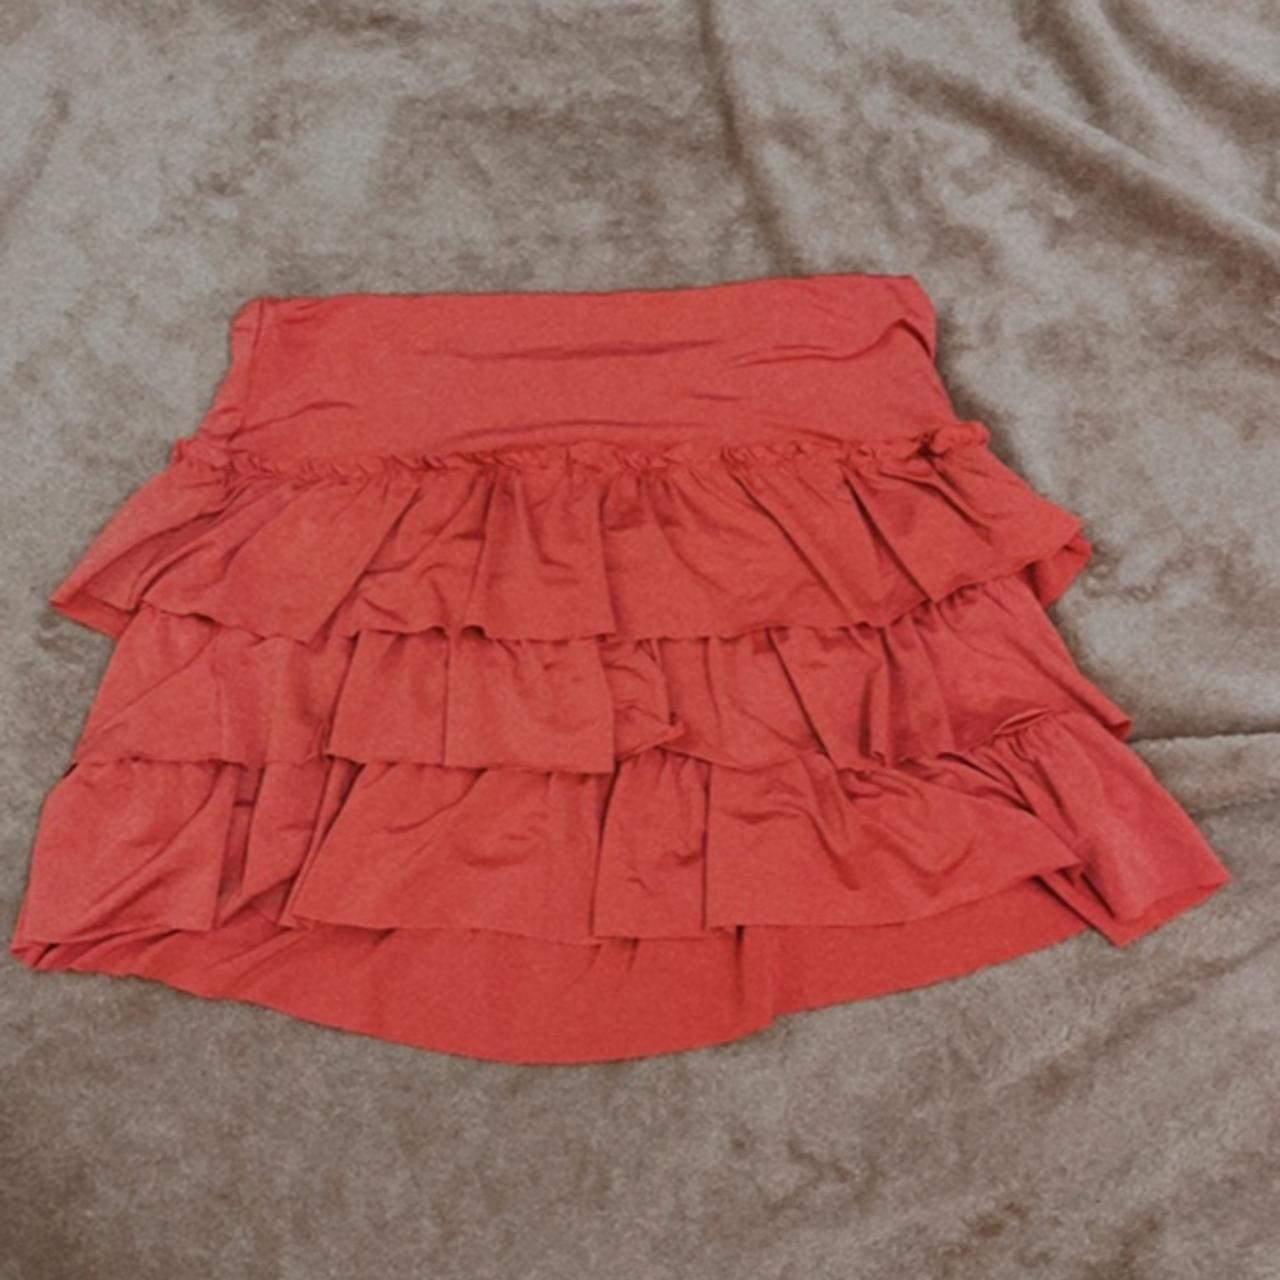 Cute pink ruffle skirt 💗 Size 8 Standard shipping $8 - Depop